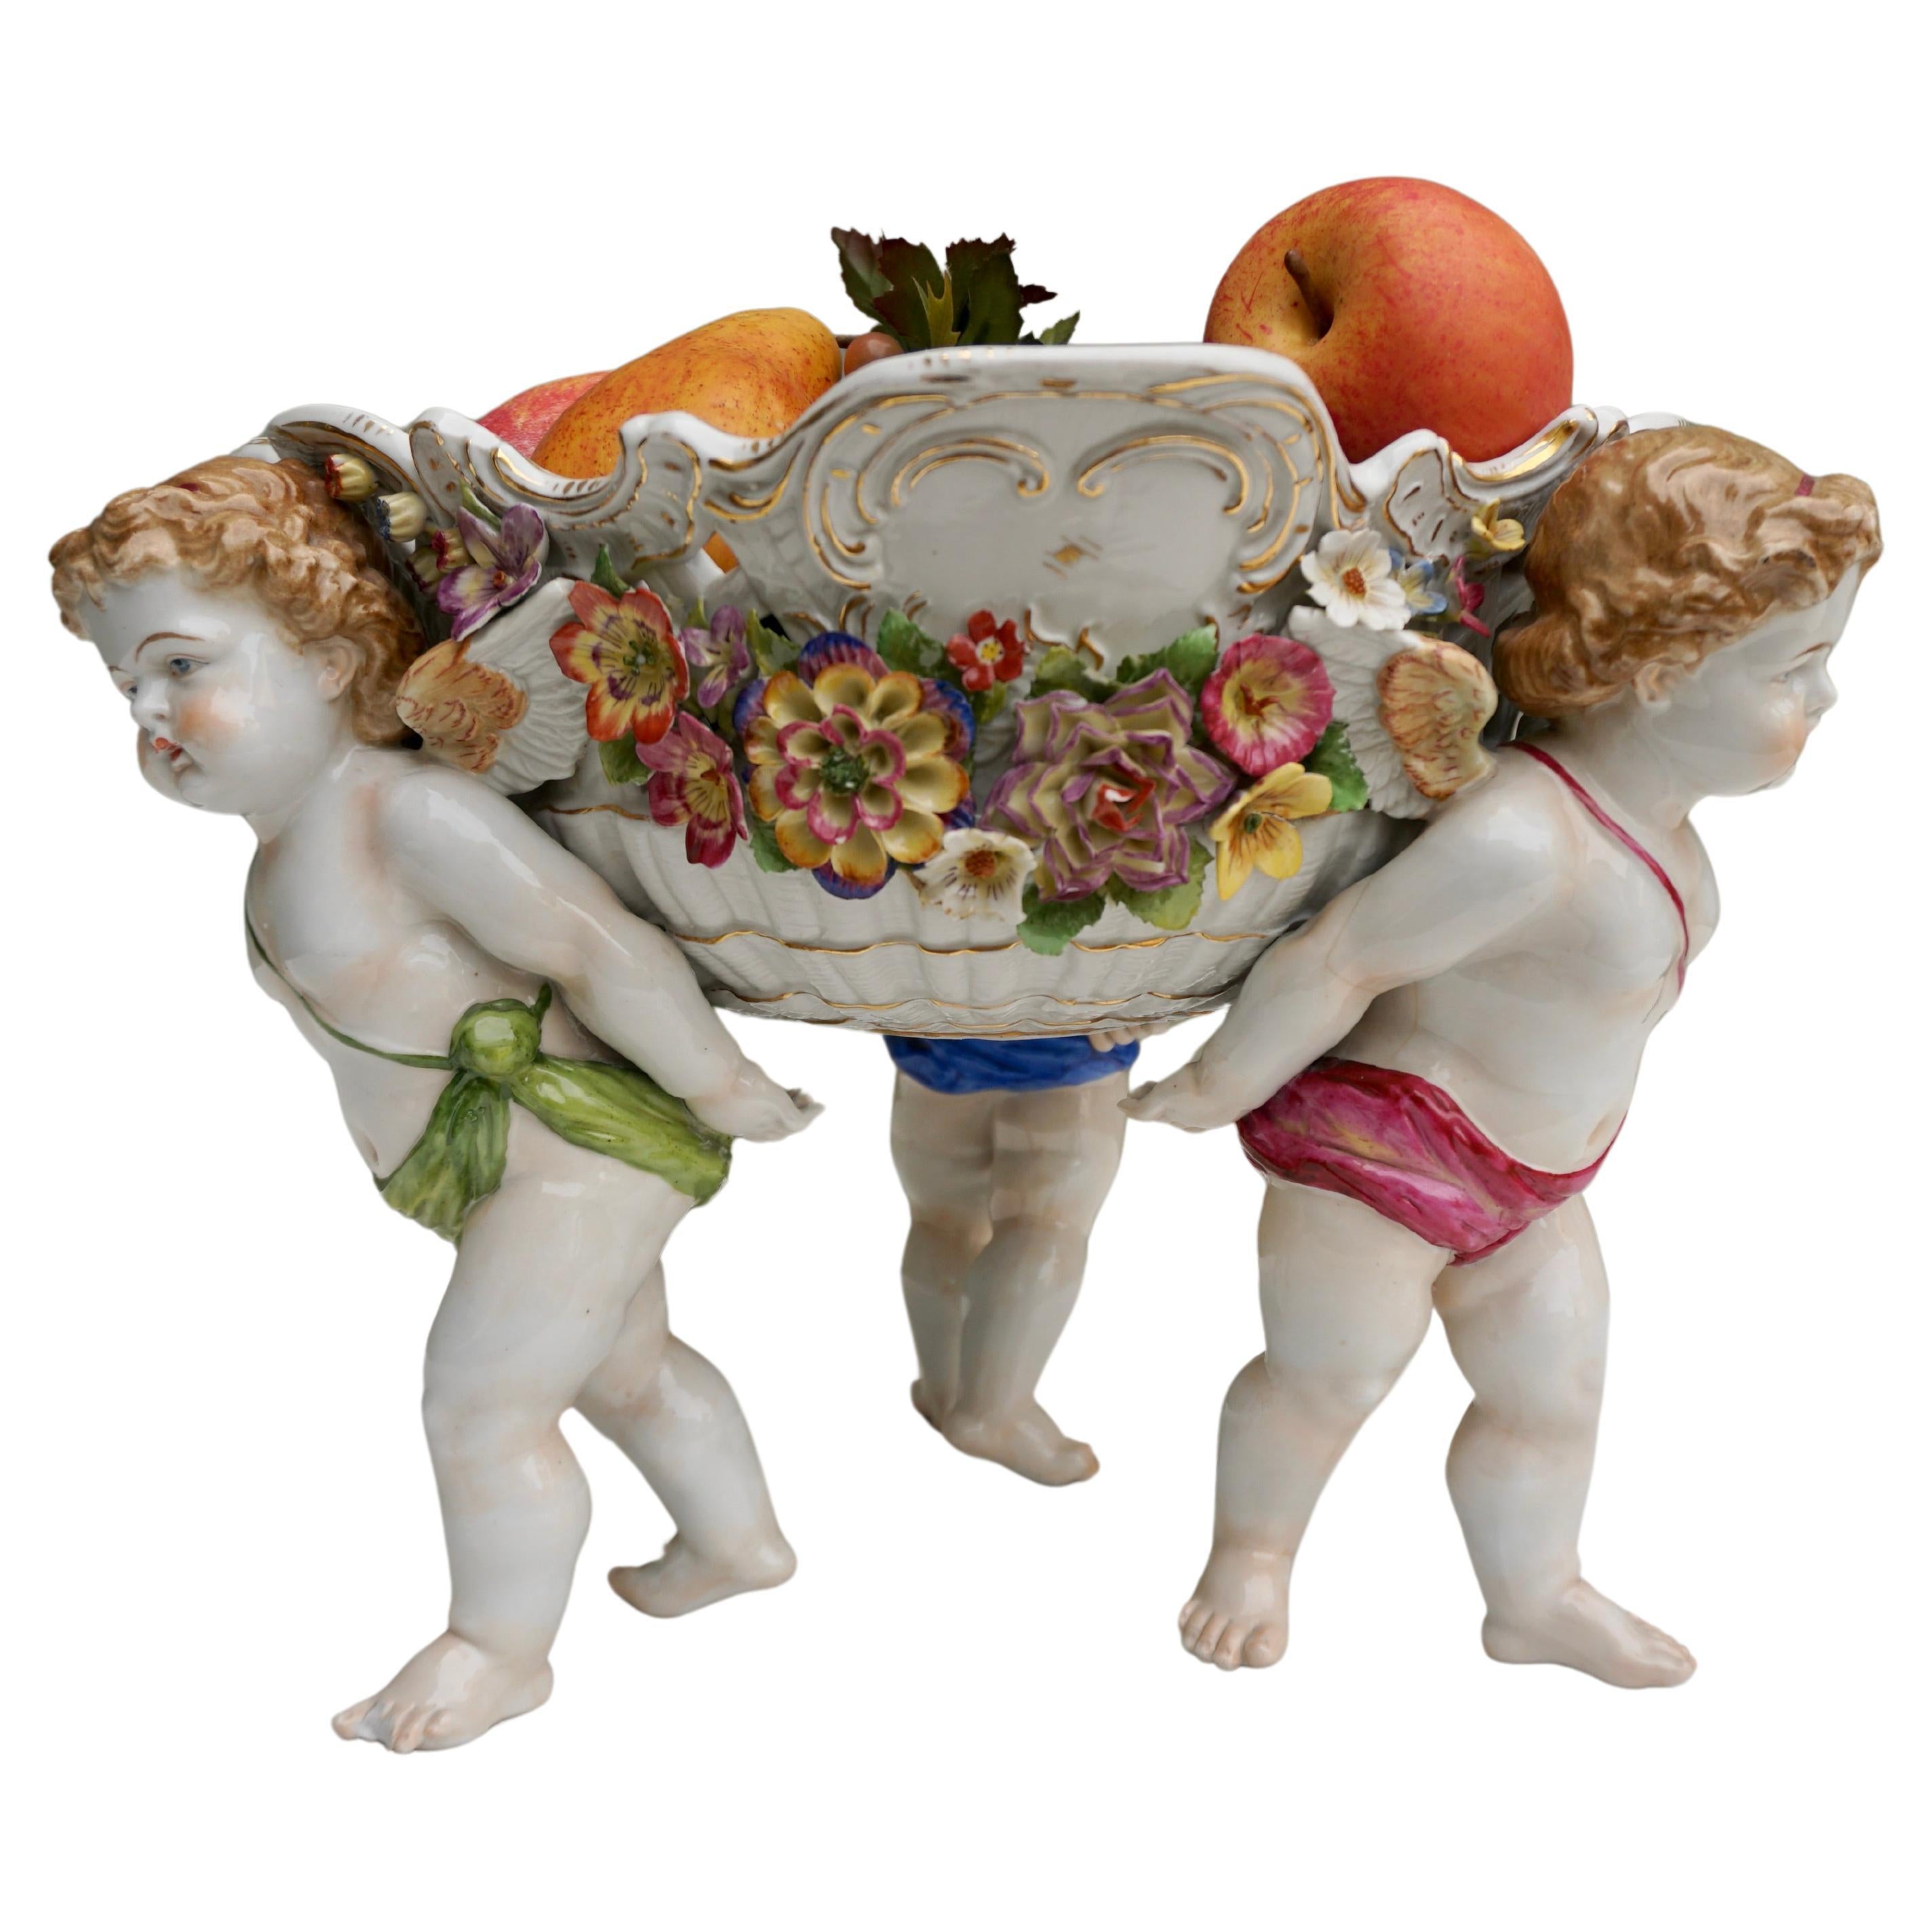 Jardinière ou bol de centre de table en porcelaine viennoise du 19e siècle avec chérubin figuratif